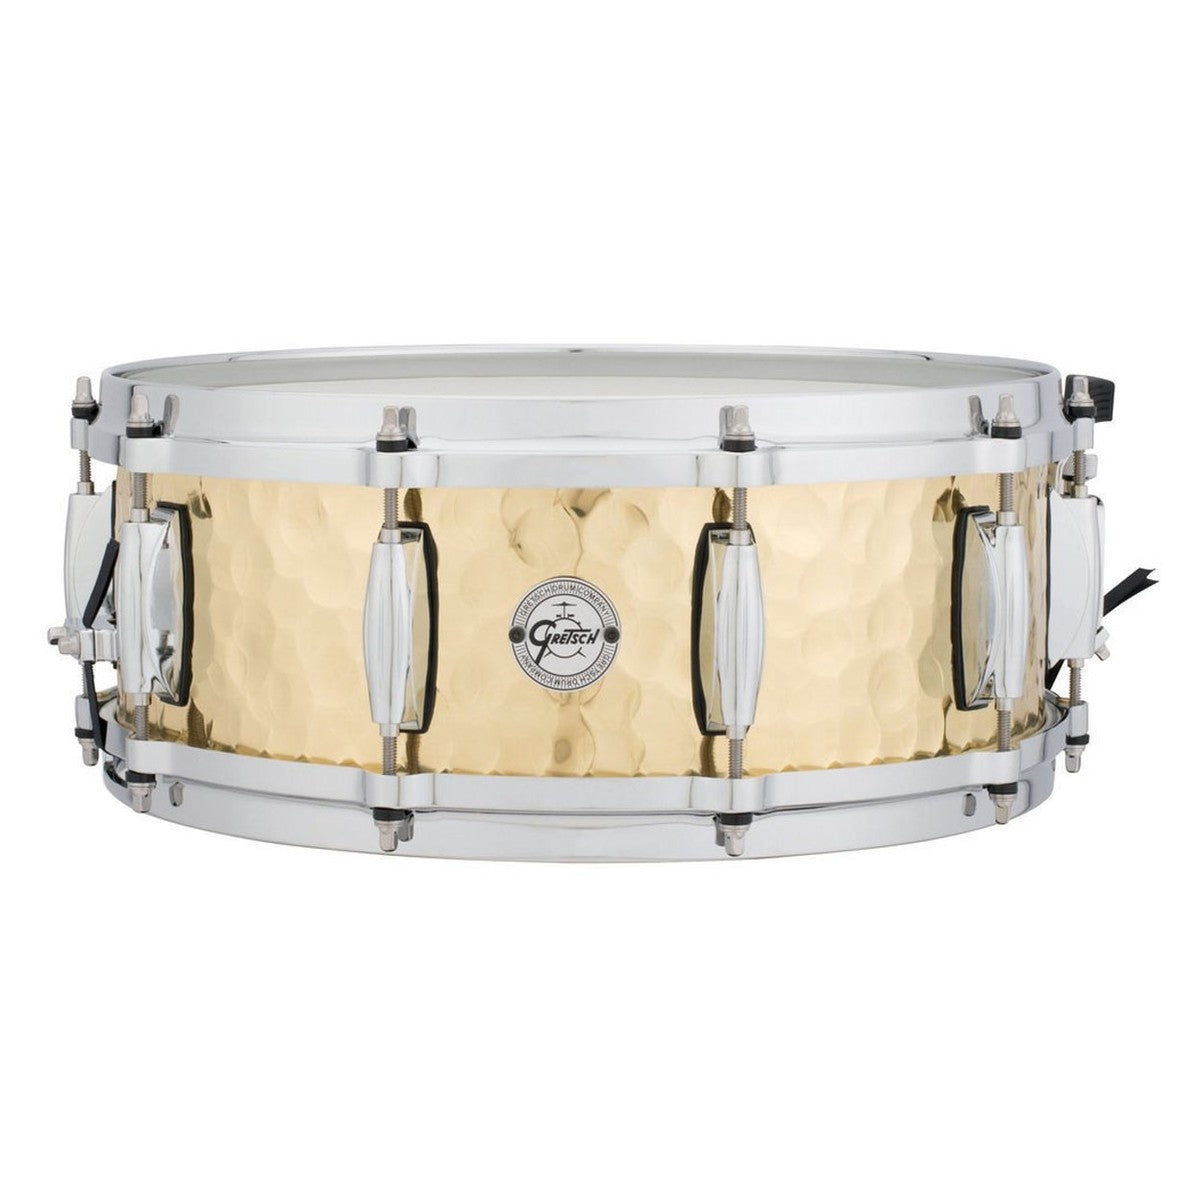 Gretsch "Full Range" 14"x5" Hammered Brass Snare Drum